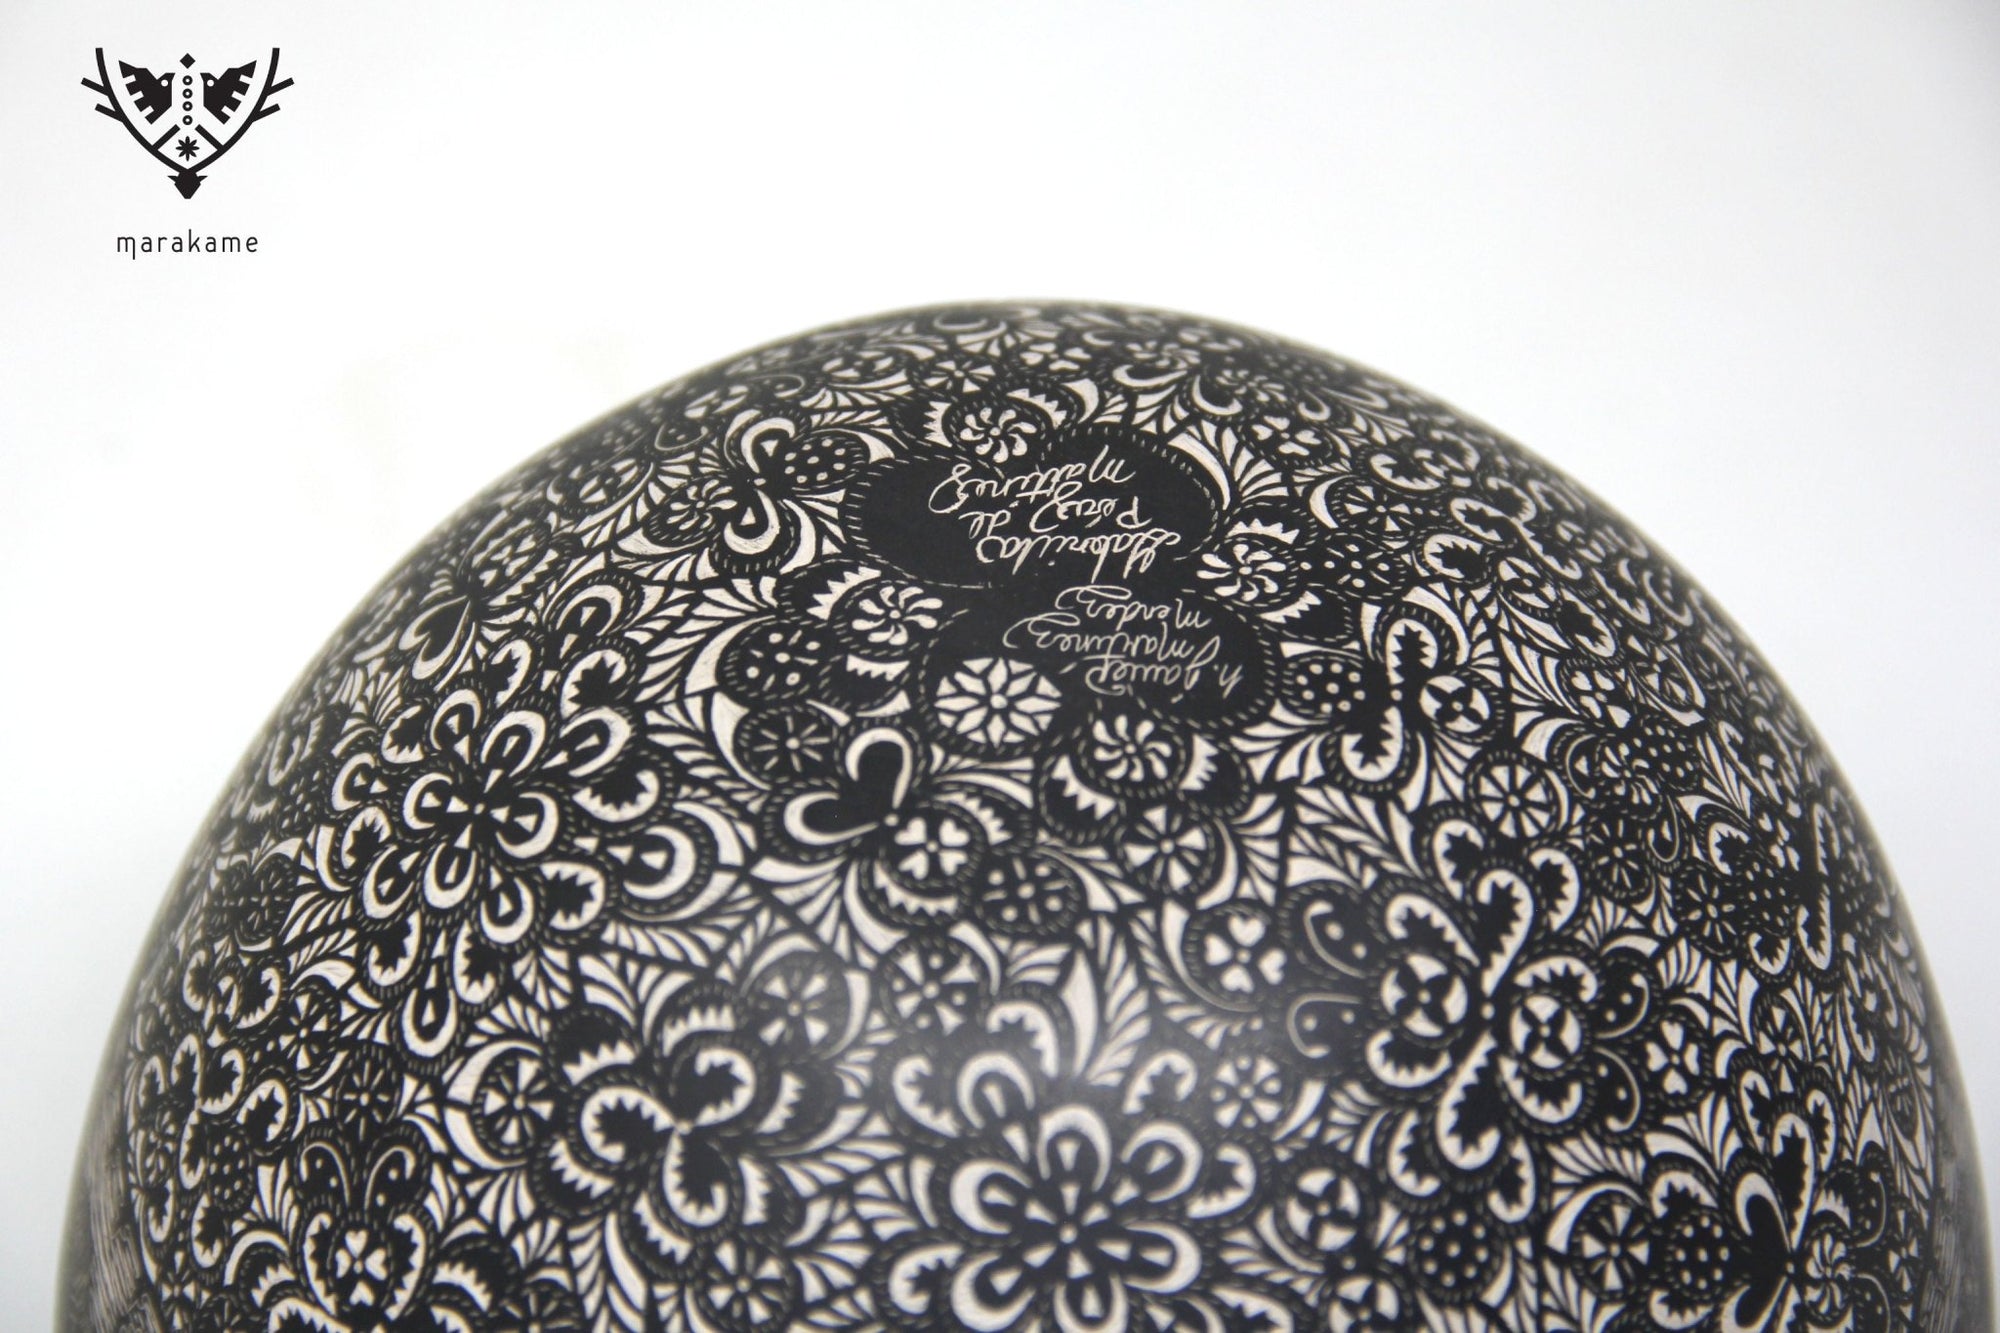 Mata Ortiz Keramik – Ruhe in Frieden – Nacht – Huichol-Kunst – Marakame